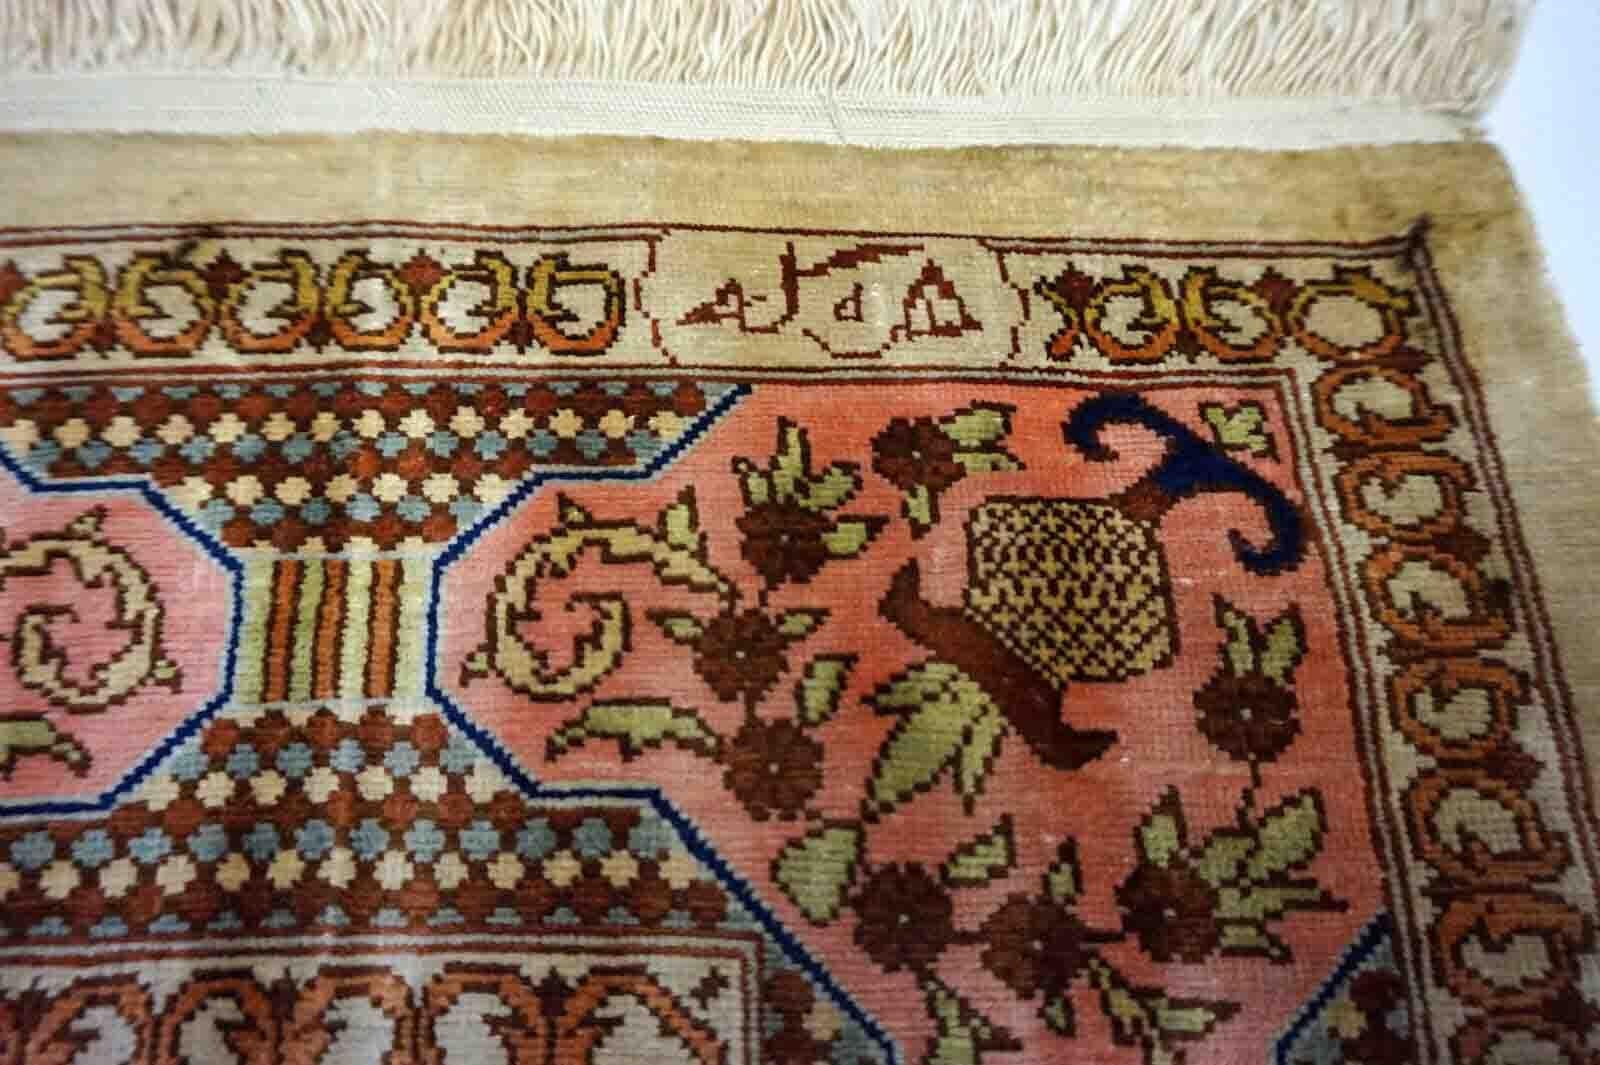 Handgefertigter Gebetsteppich aus türkischer Hereke-Seide in den Farben Beige, Rosa und Blau. Der Teppich stammt aus dem Ende des 20. Jahrhunderts und ist in gutem Originalzustand. Es ist aus natürlicher Seide gefertigt.

-Zustand: original